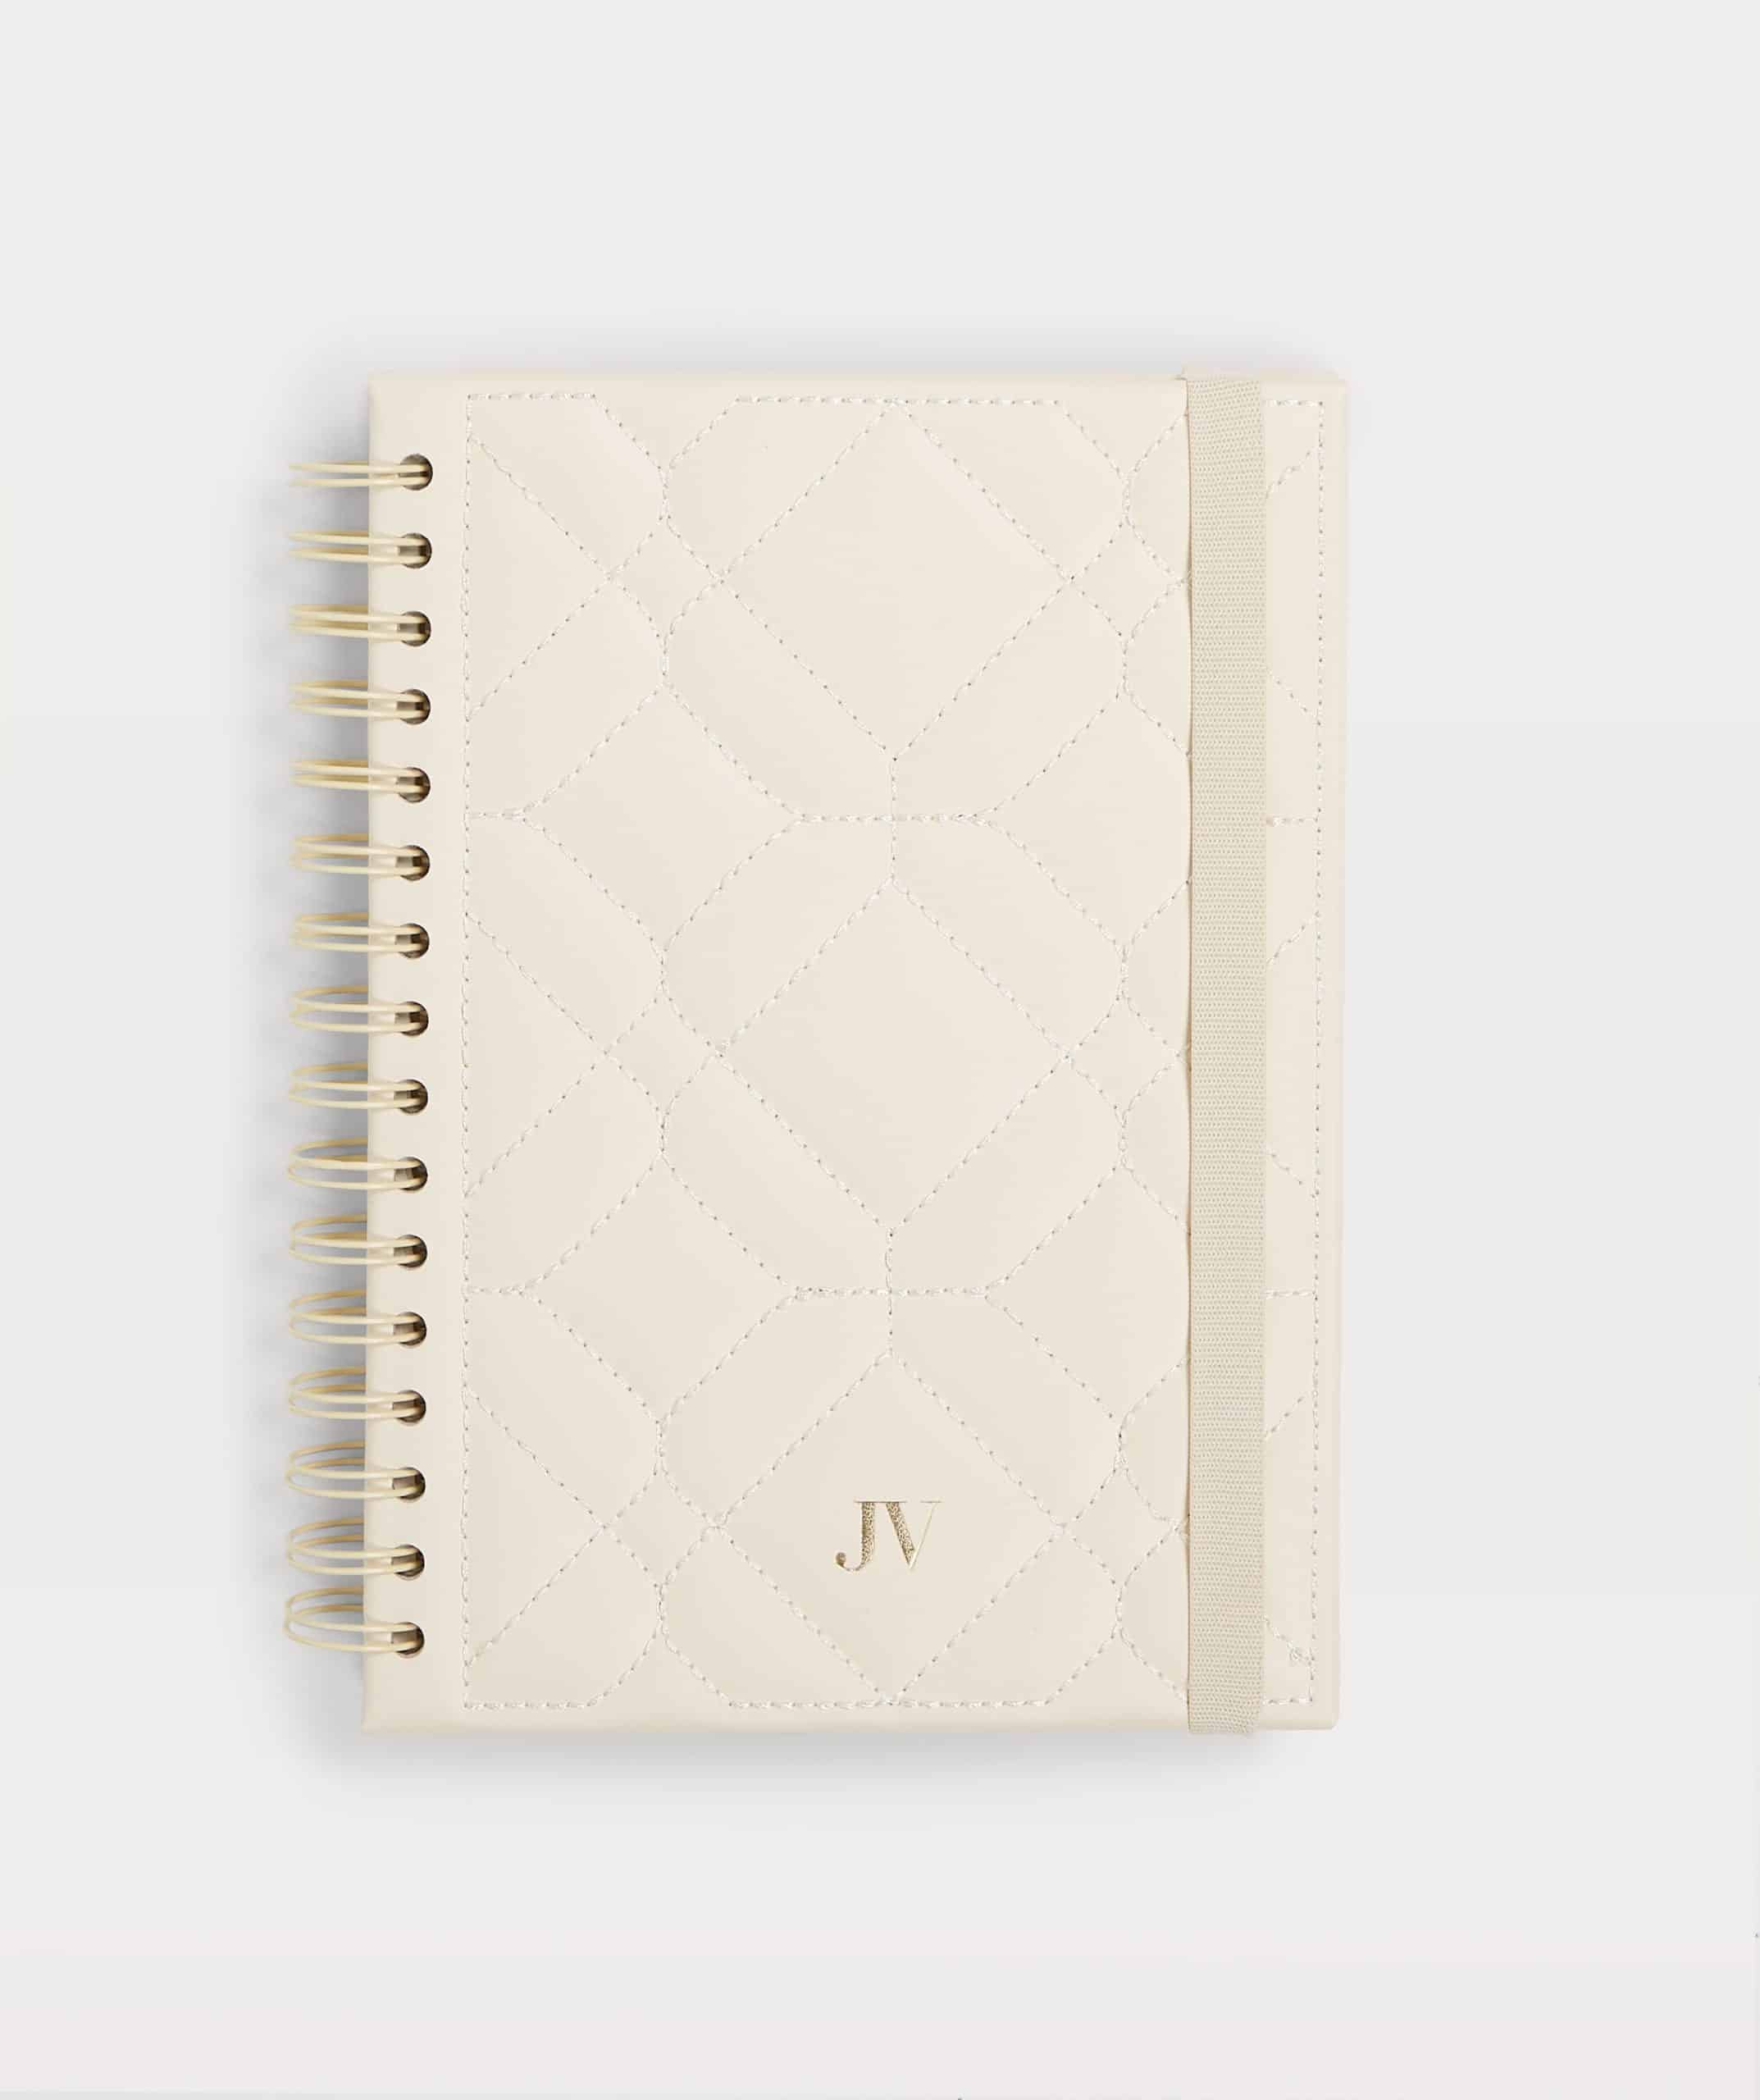 JOSH V JV Notebook